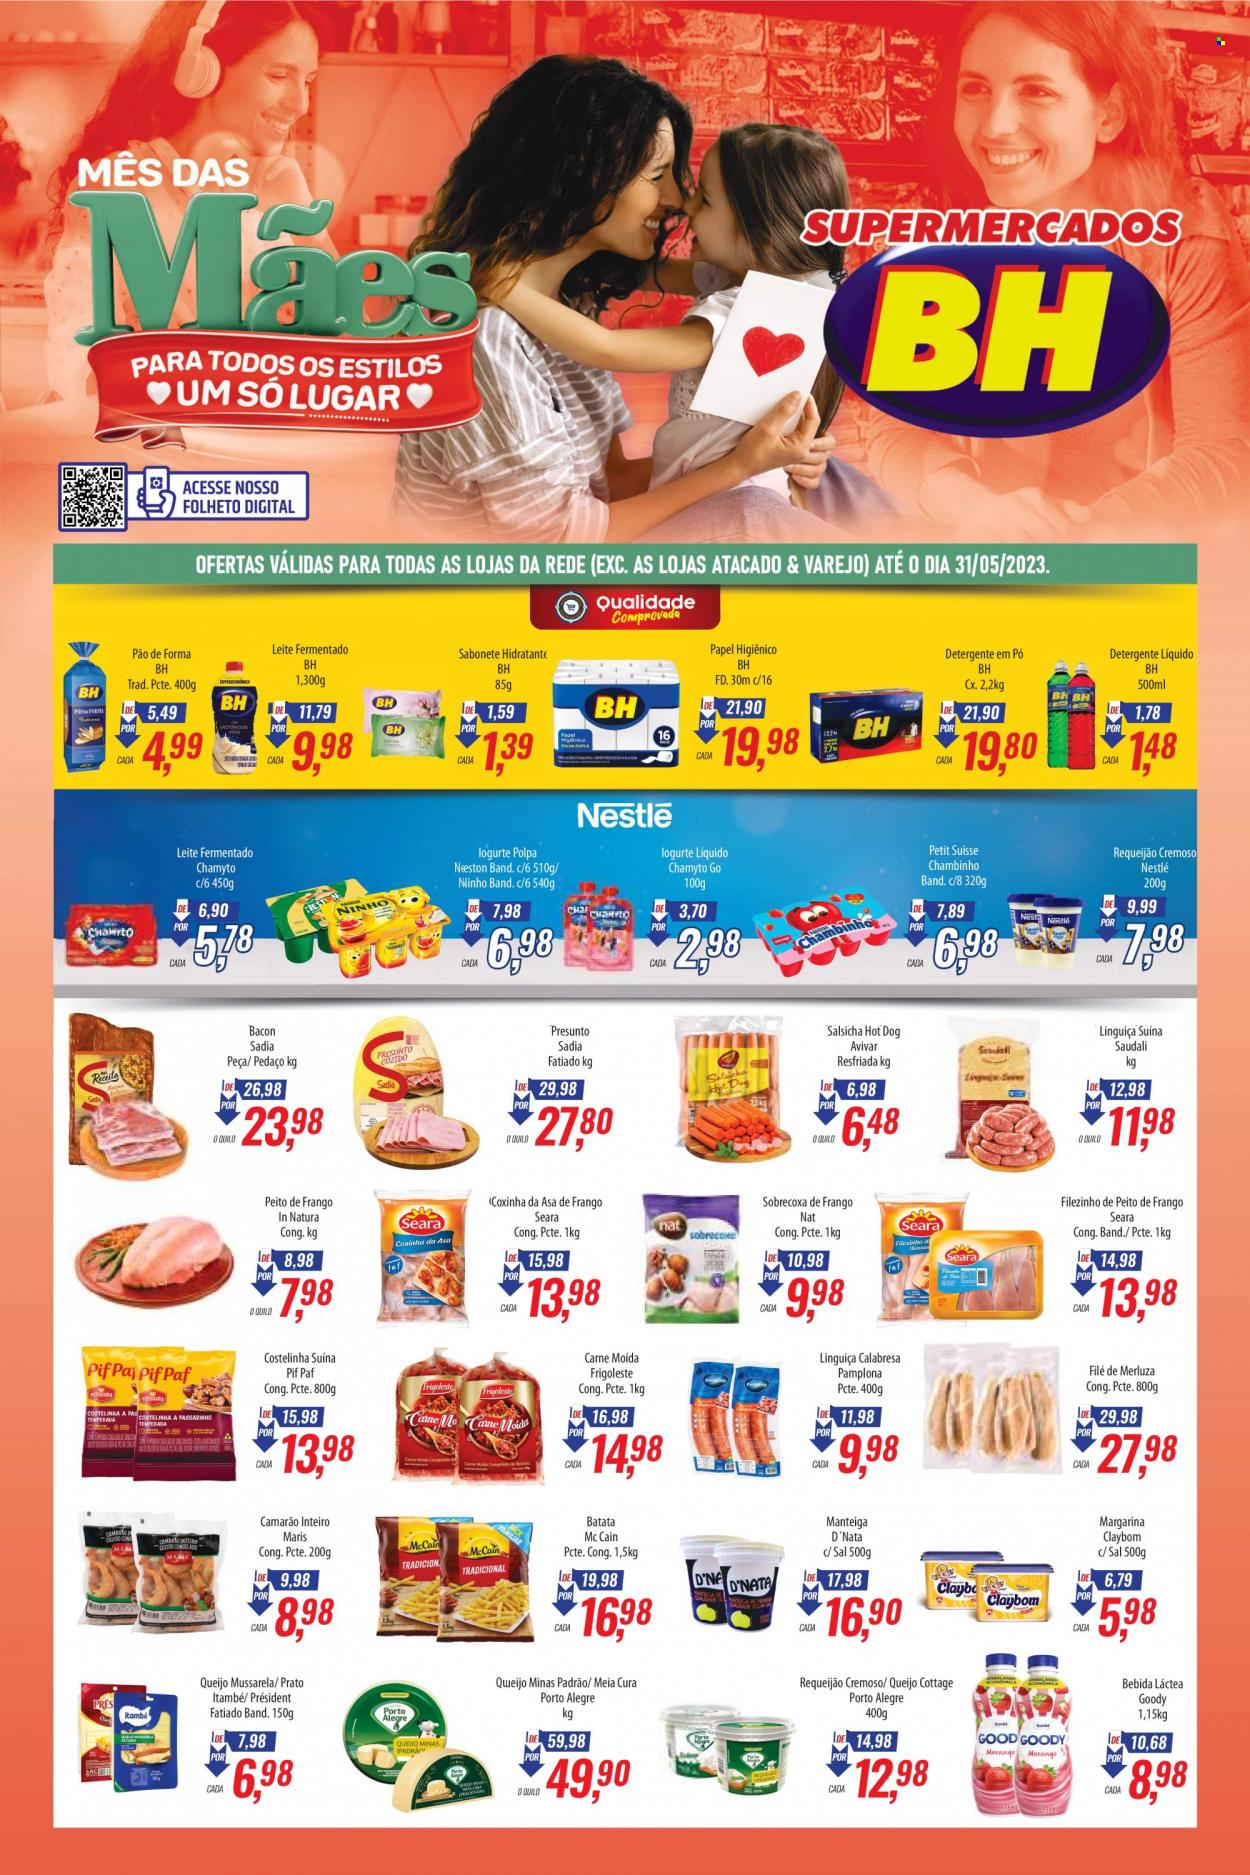 Encarte Supermercados BH  - 15.05.2023 - 31.05.2023.